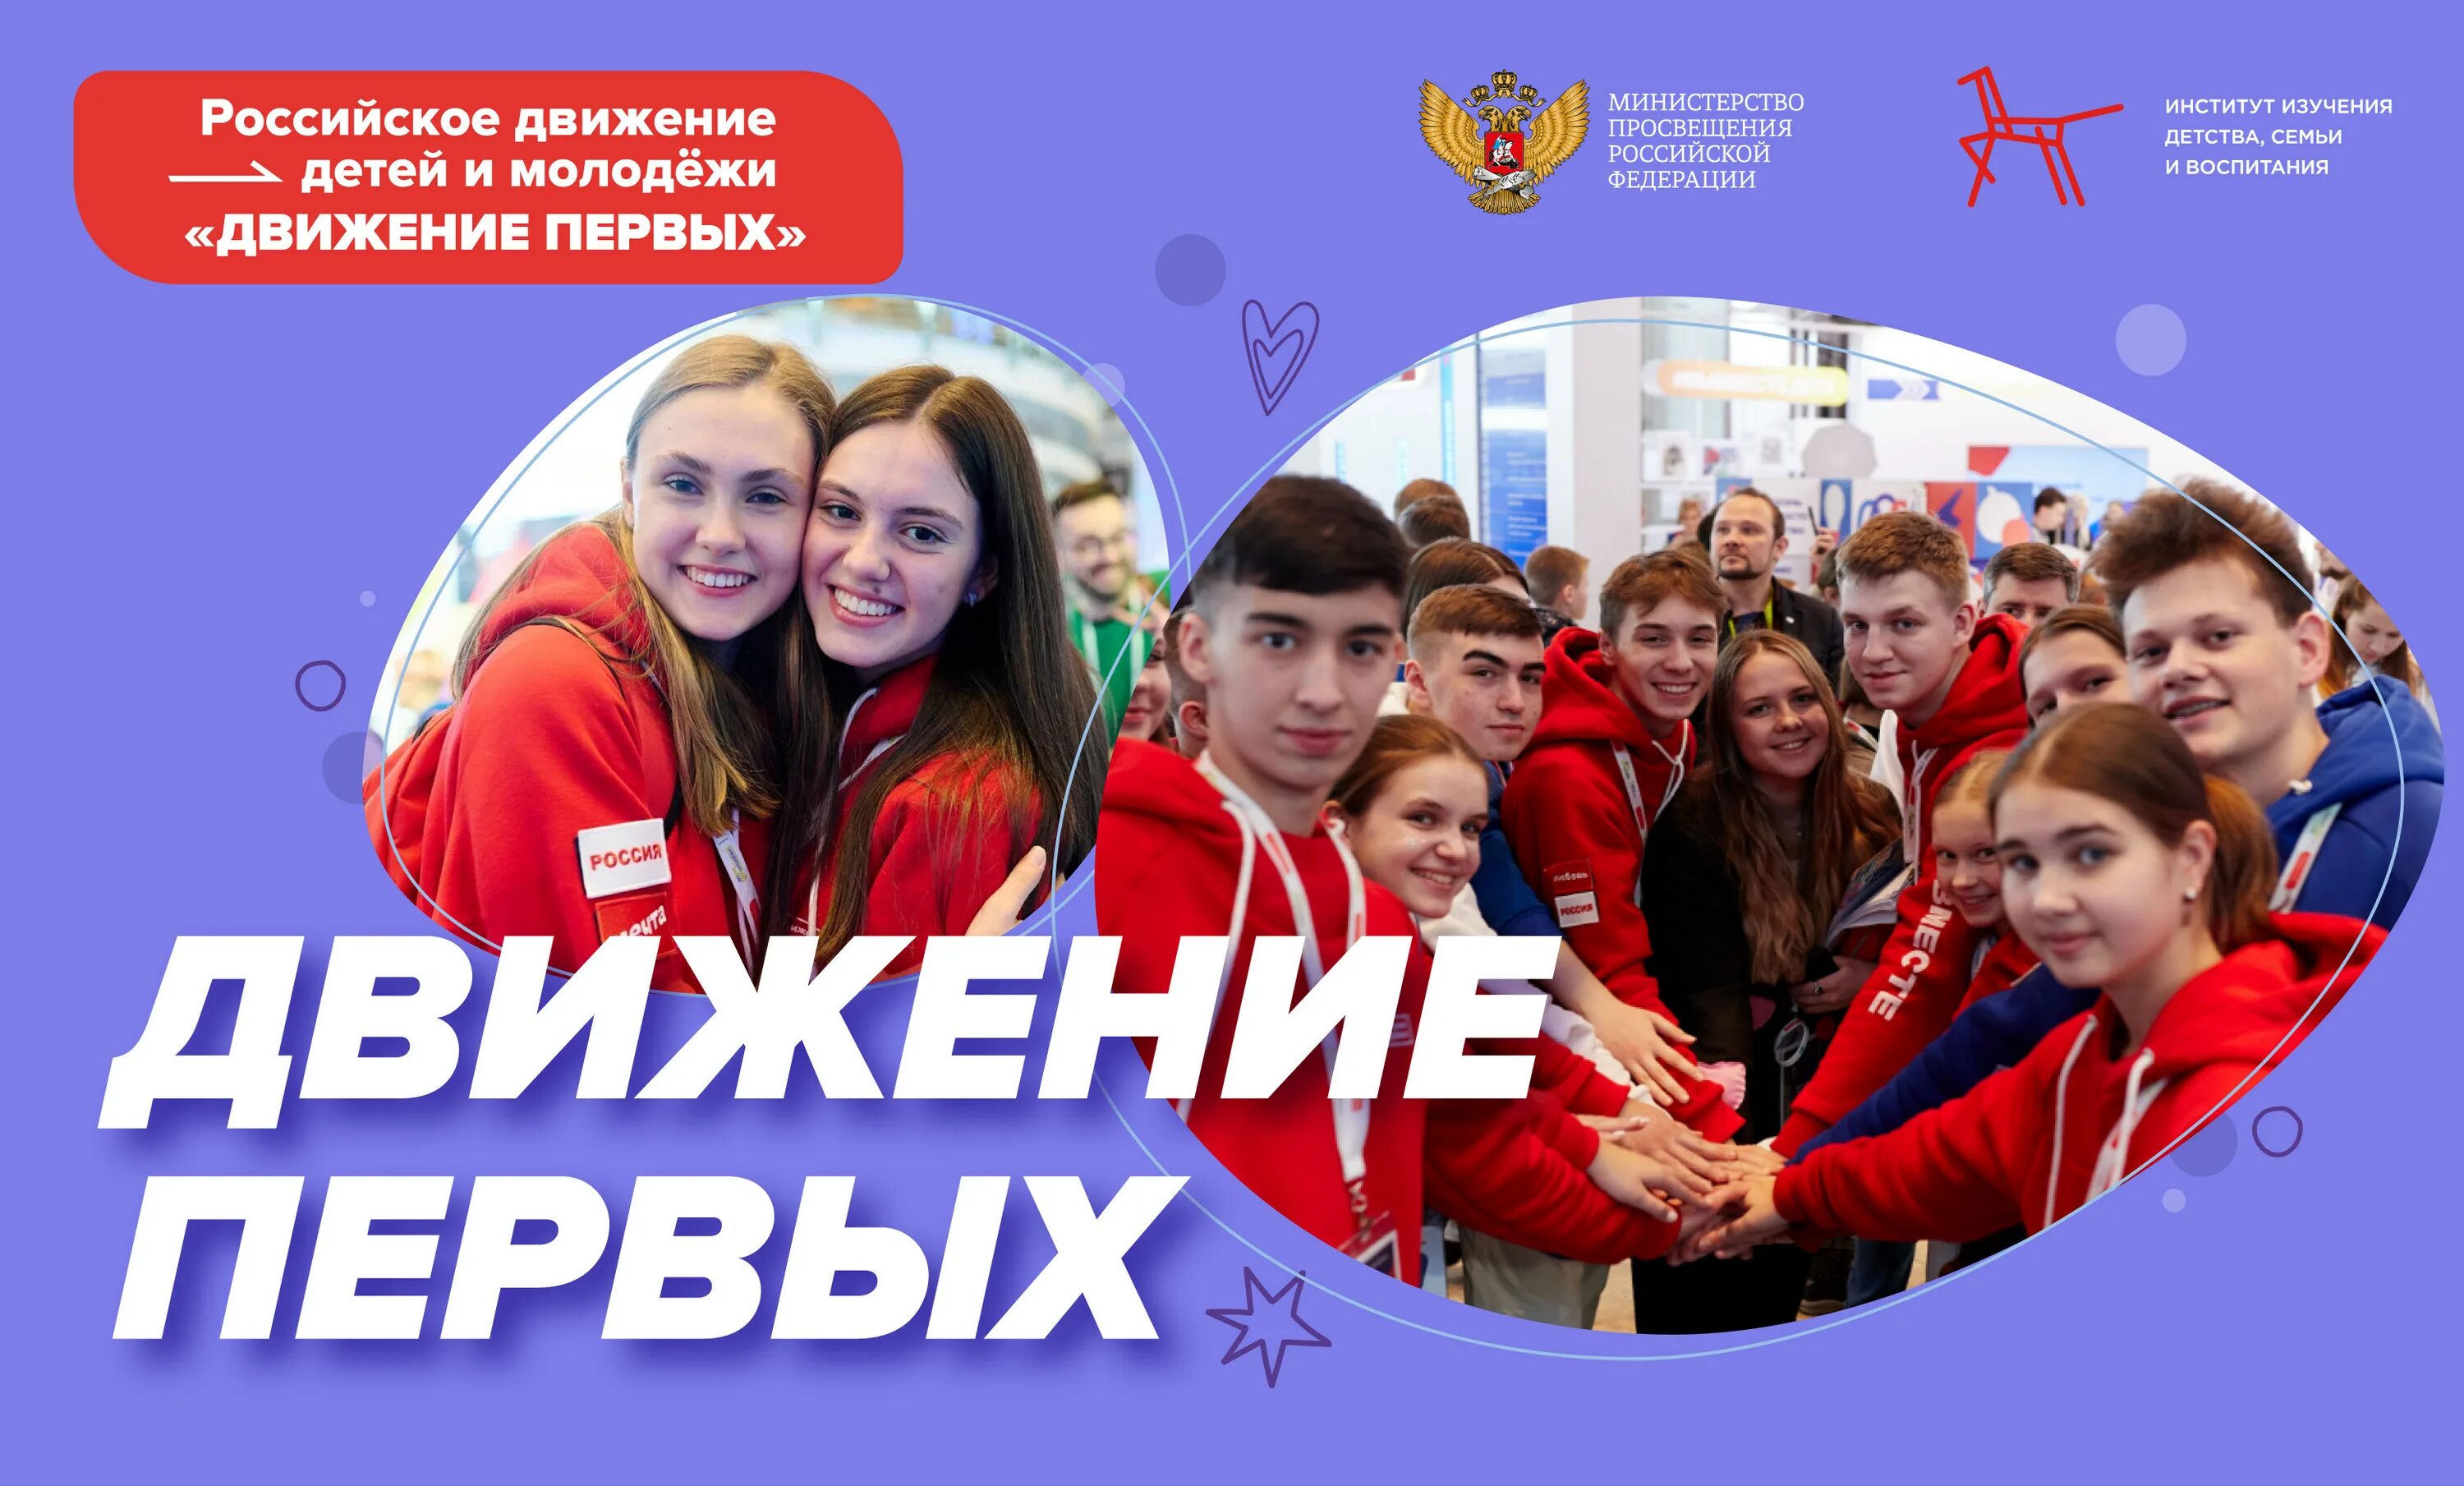 Российское движение первых детей и молодежи. Движение первых. Российское движение детей и молодёжи движение. Детское и молодежное движение это.